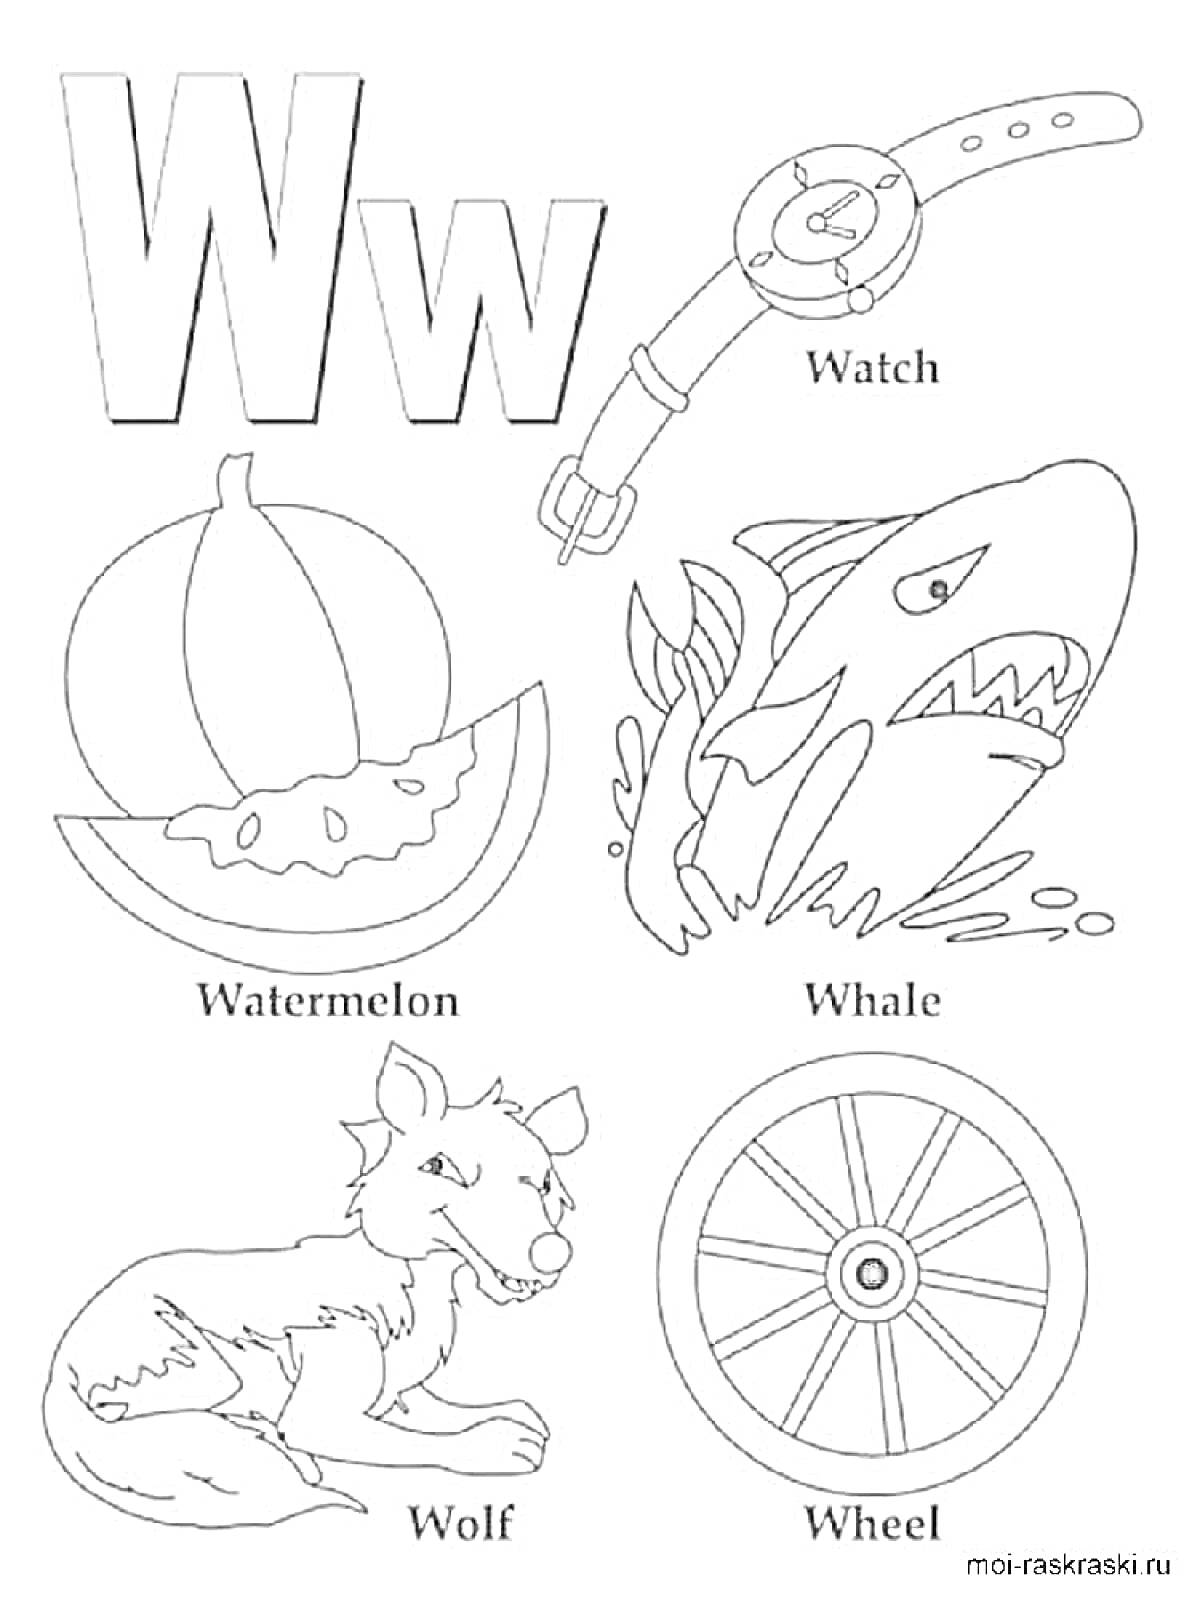 Раскраска Буква W с изображениями предметов и животных на эту букву